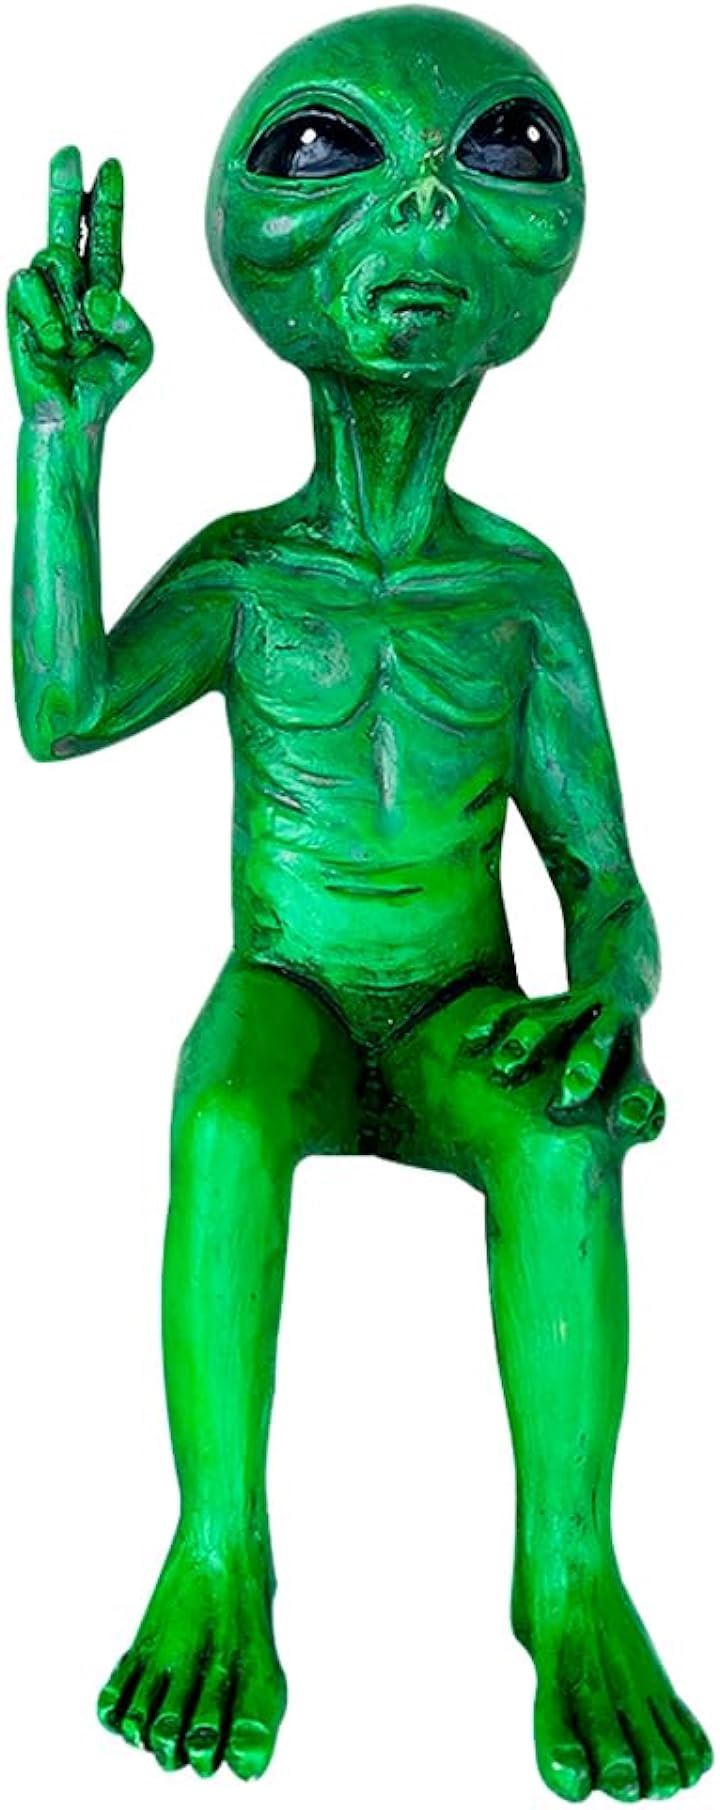 エイリアン 宇宙人 置物 オブジェ 装飾 飾り フィギュア 彫像 ミニチュア インテリア( グリーン)